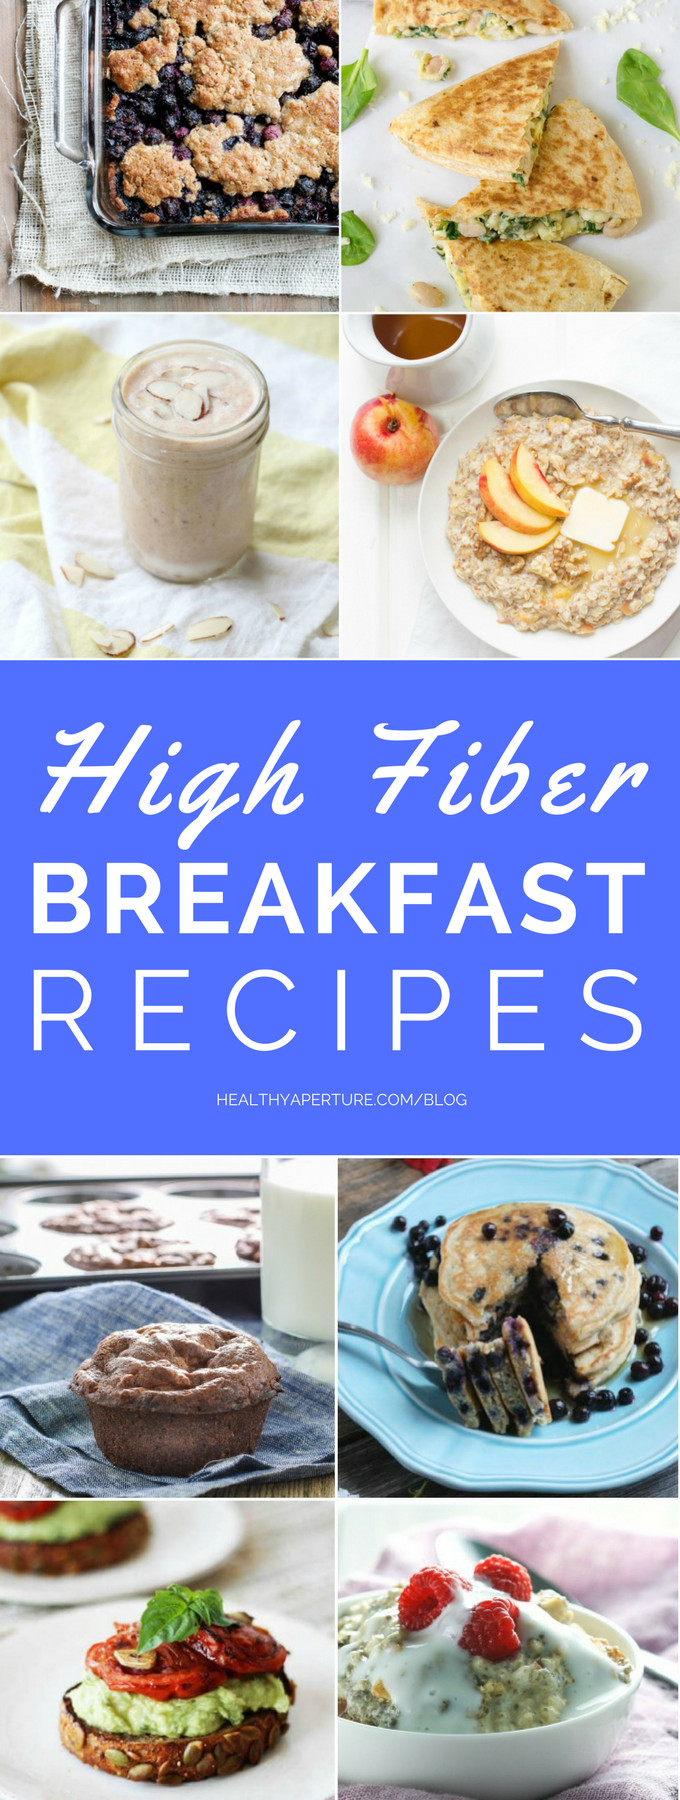 High Fiber Breakfast Recipes
 High Fiber Breakfast Recipes